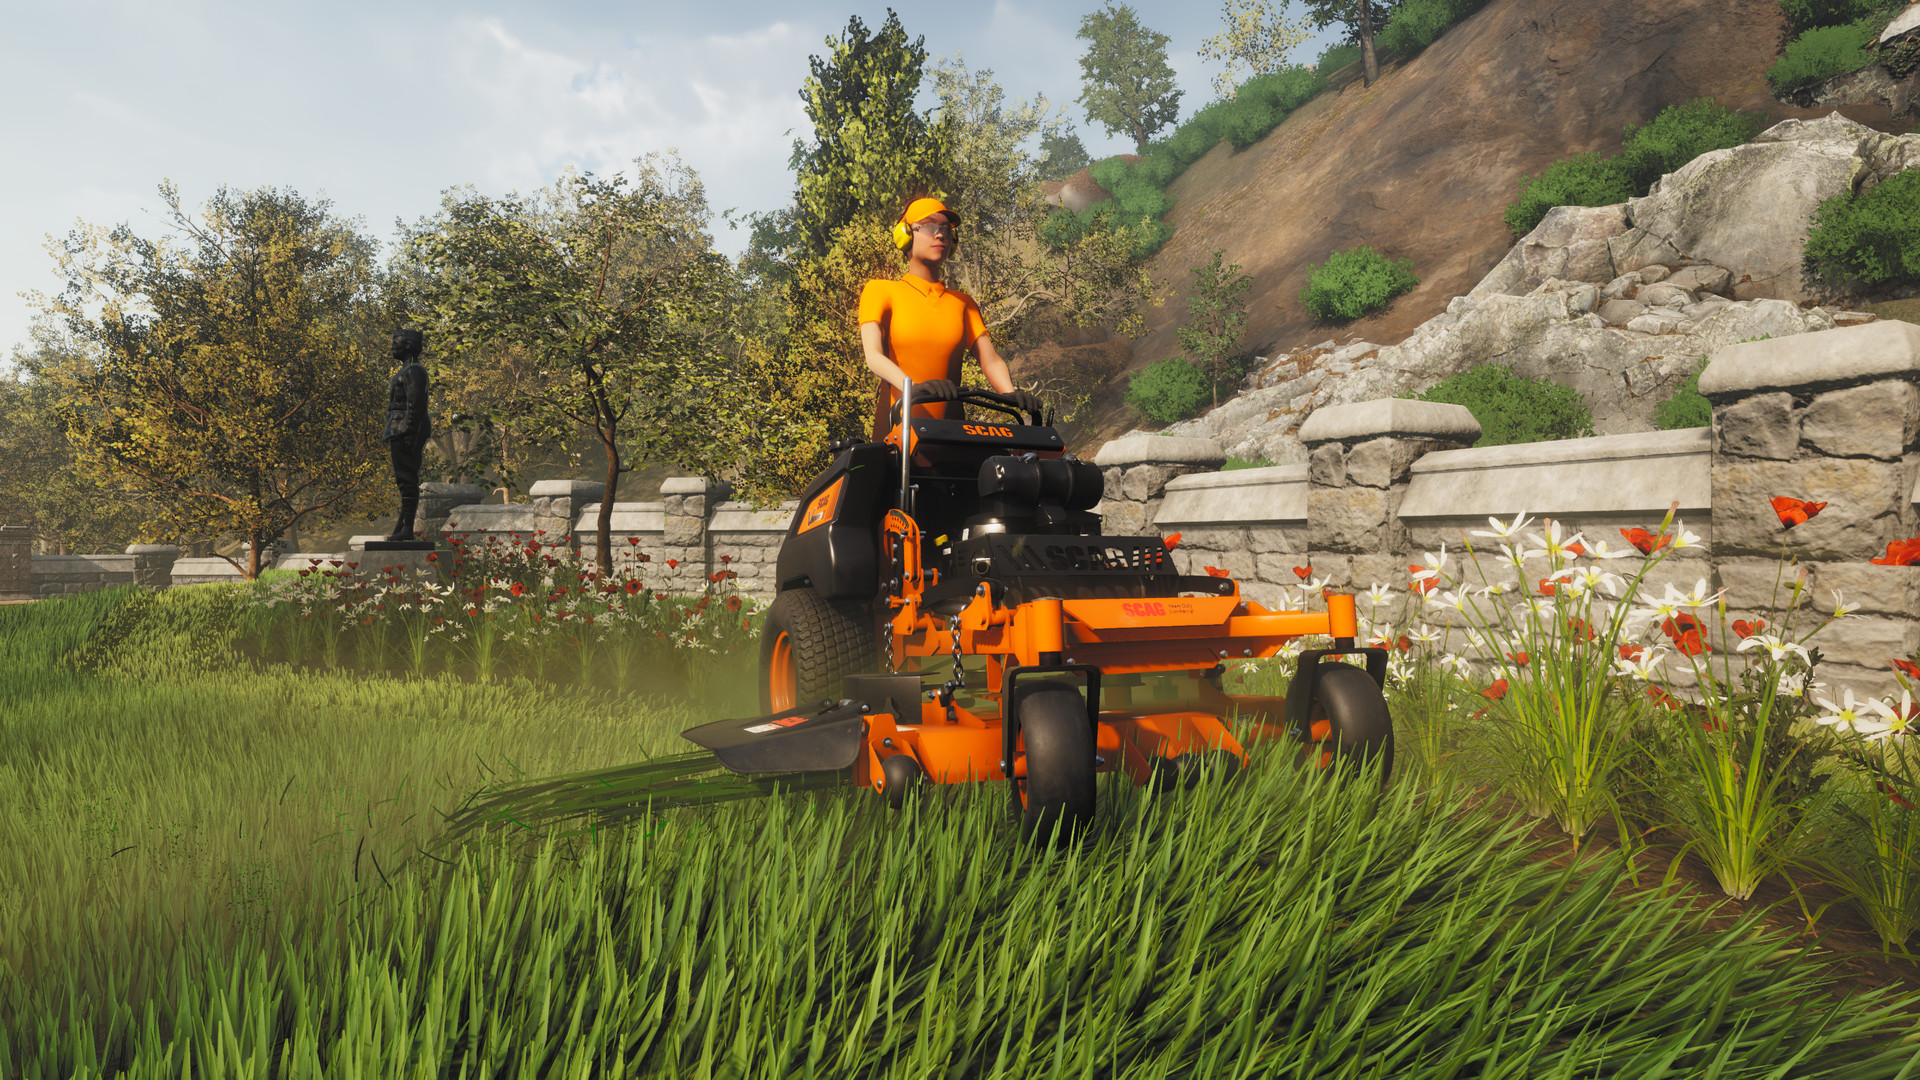 Download Lawn Mowing Simulator para pc via torrent